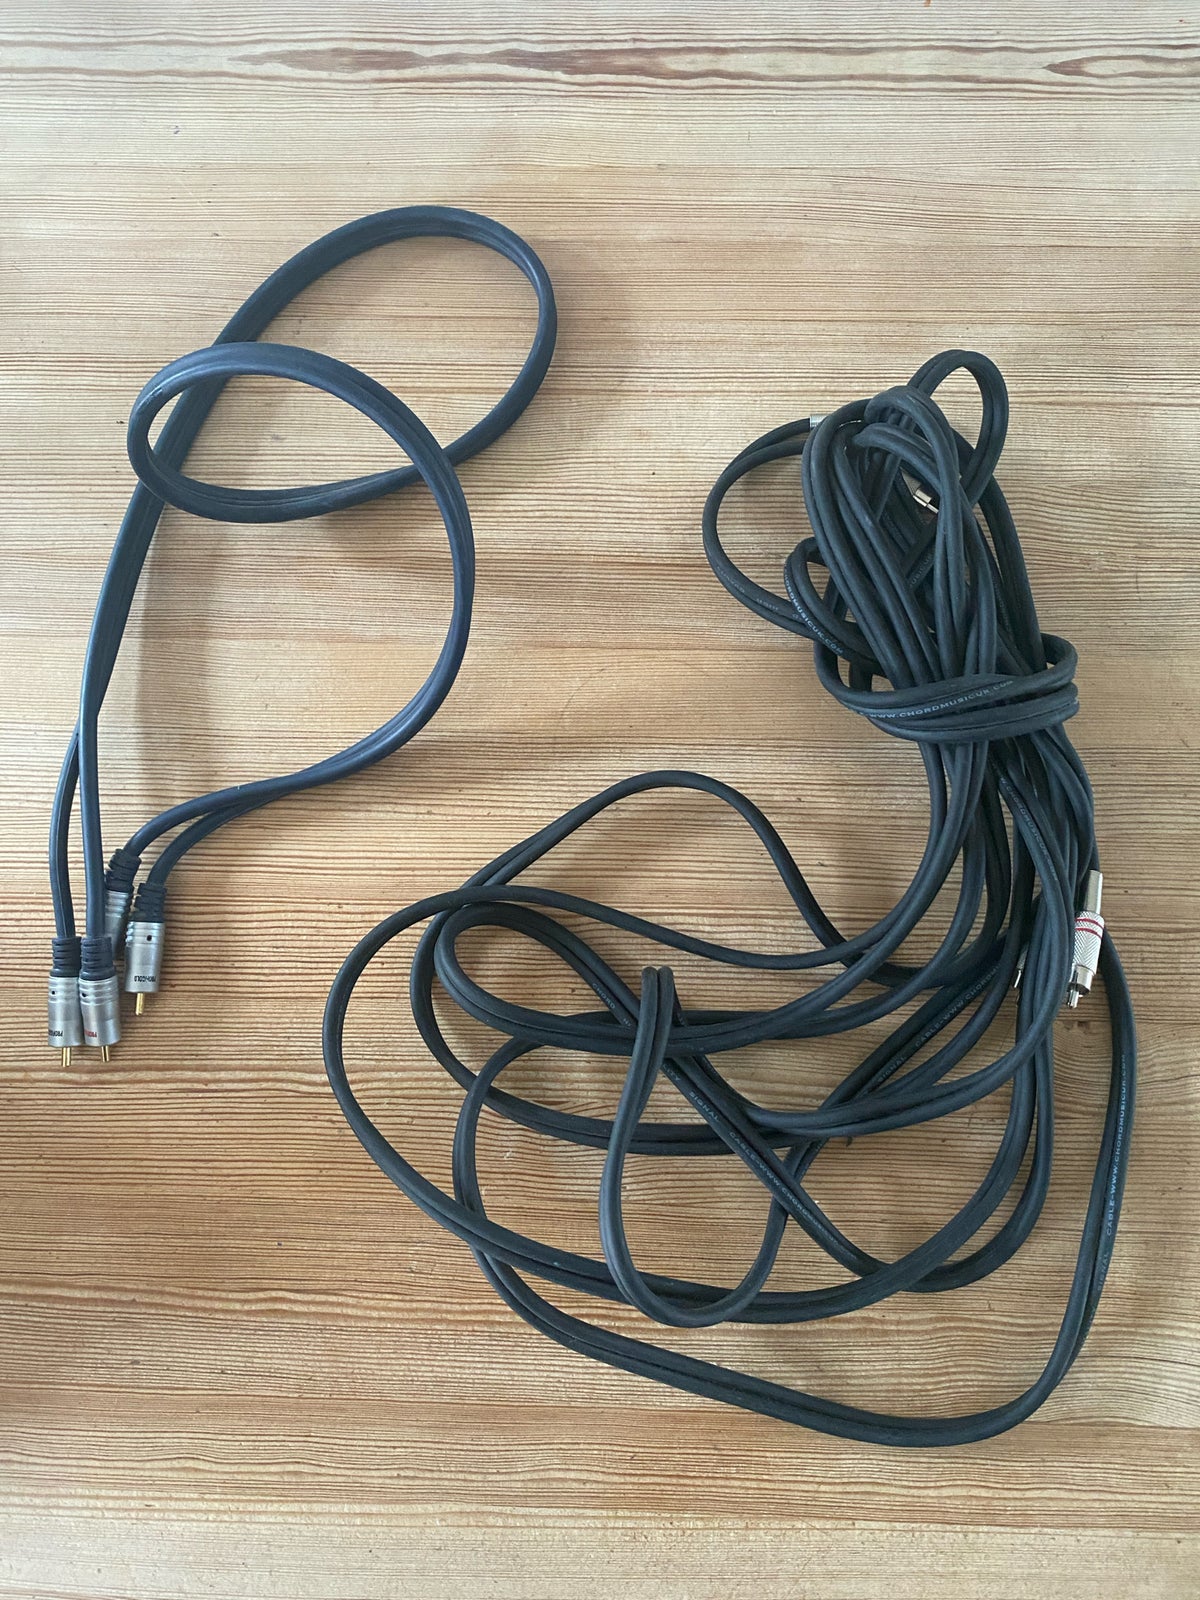 HDMI-adapter